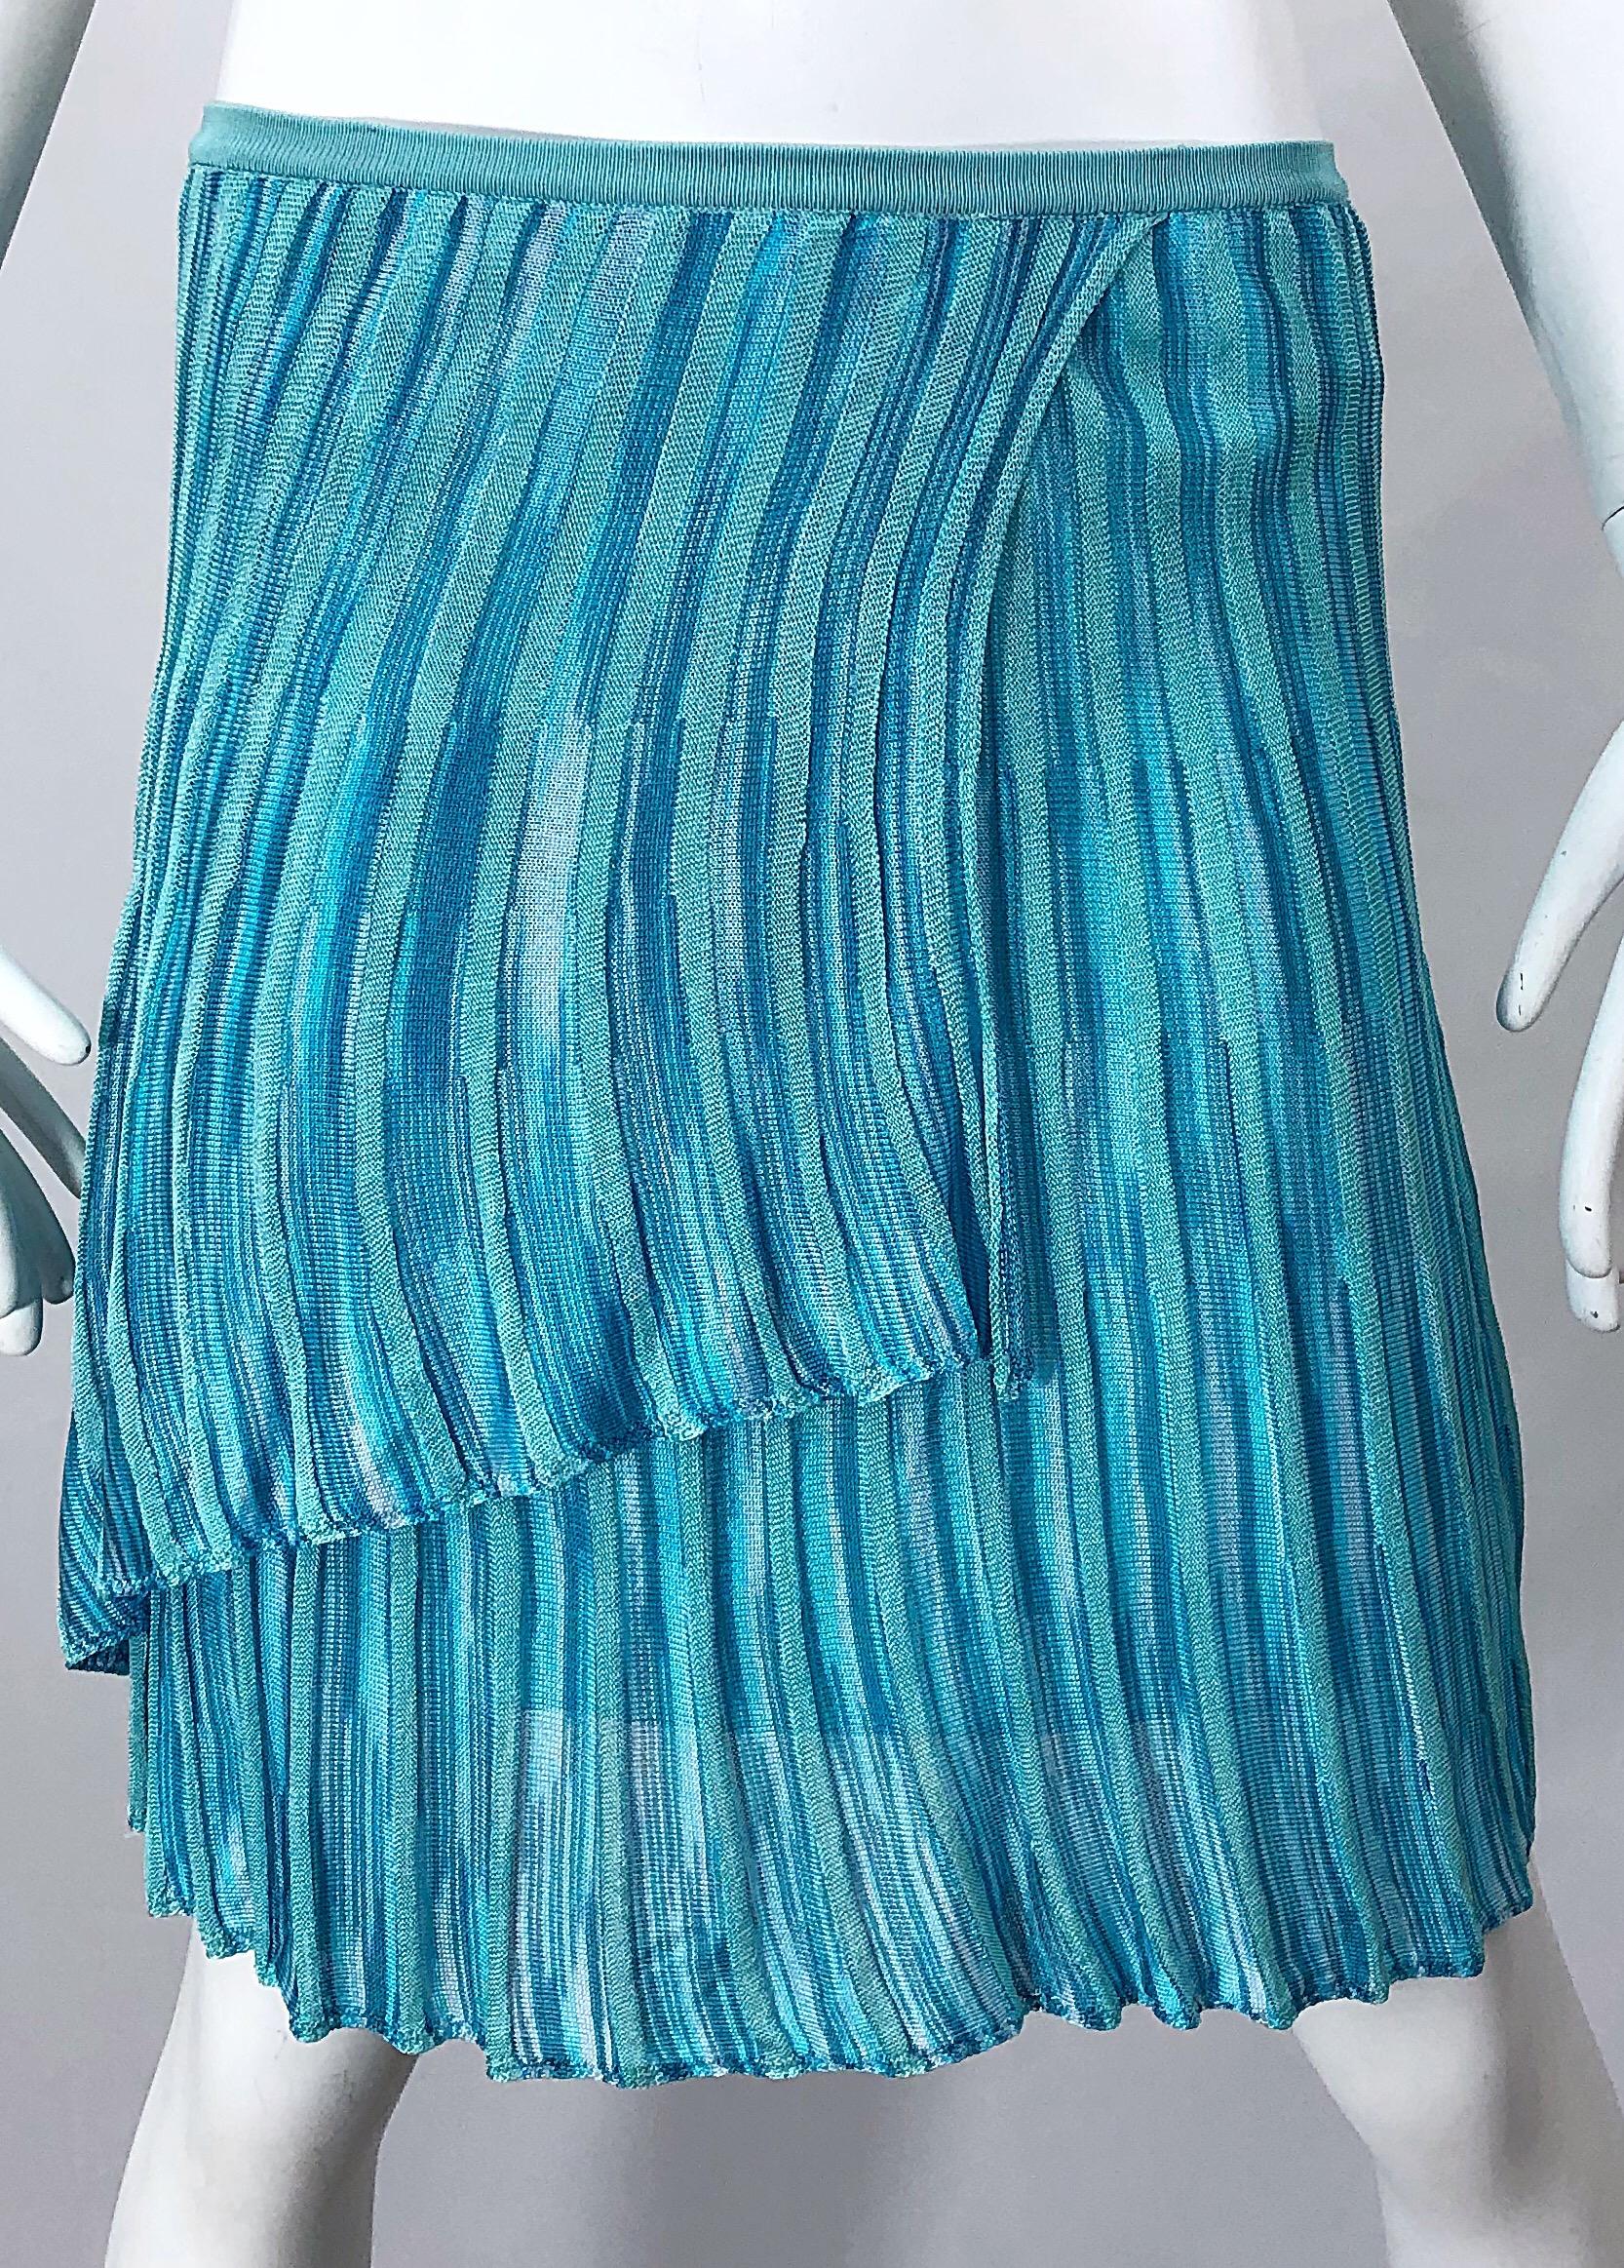 Vintage Missoni 1990s Turquoise Teal Blue Knit Vintage 90s Halter Top OR Skirt For Sale 4